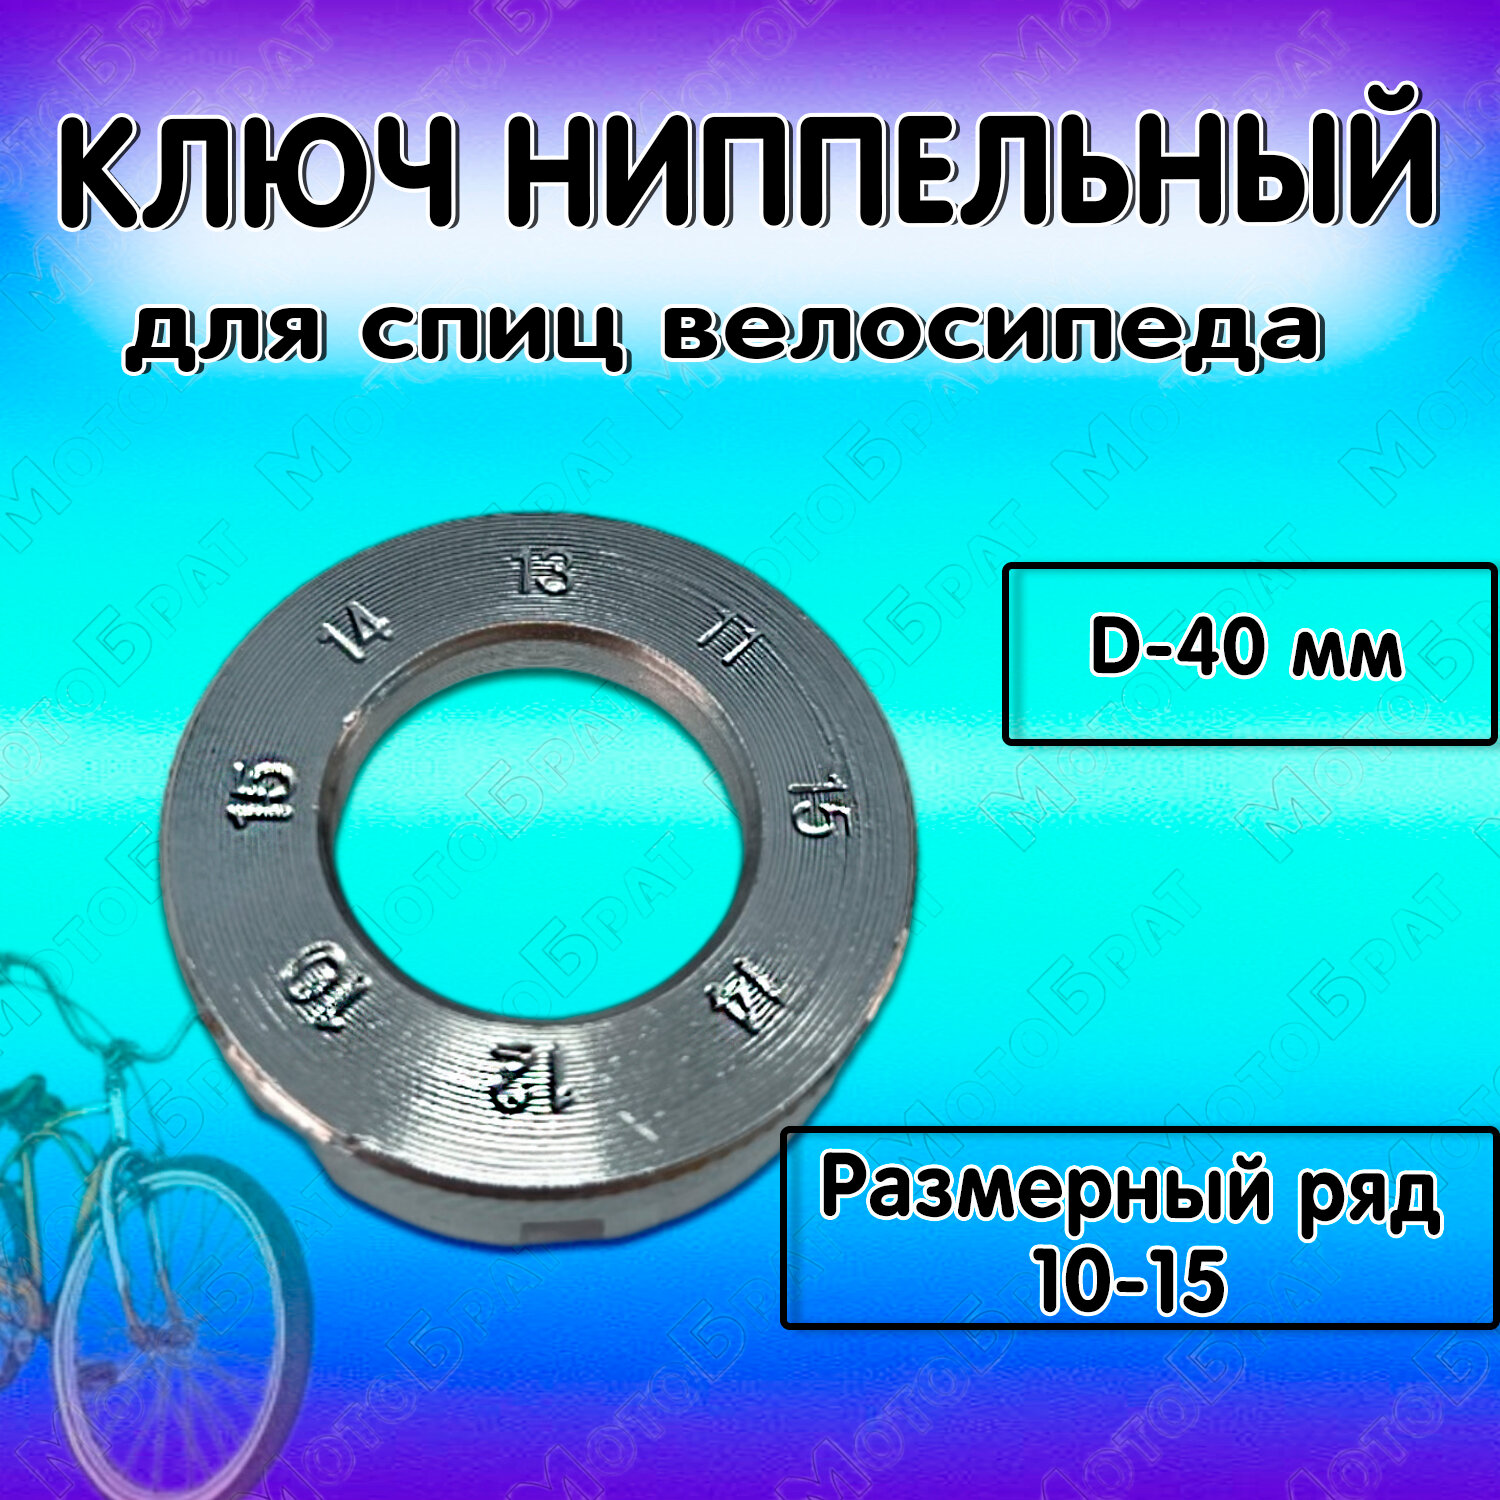 Ключ для спиц велосипеда (ниппельный)